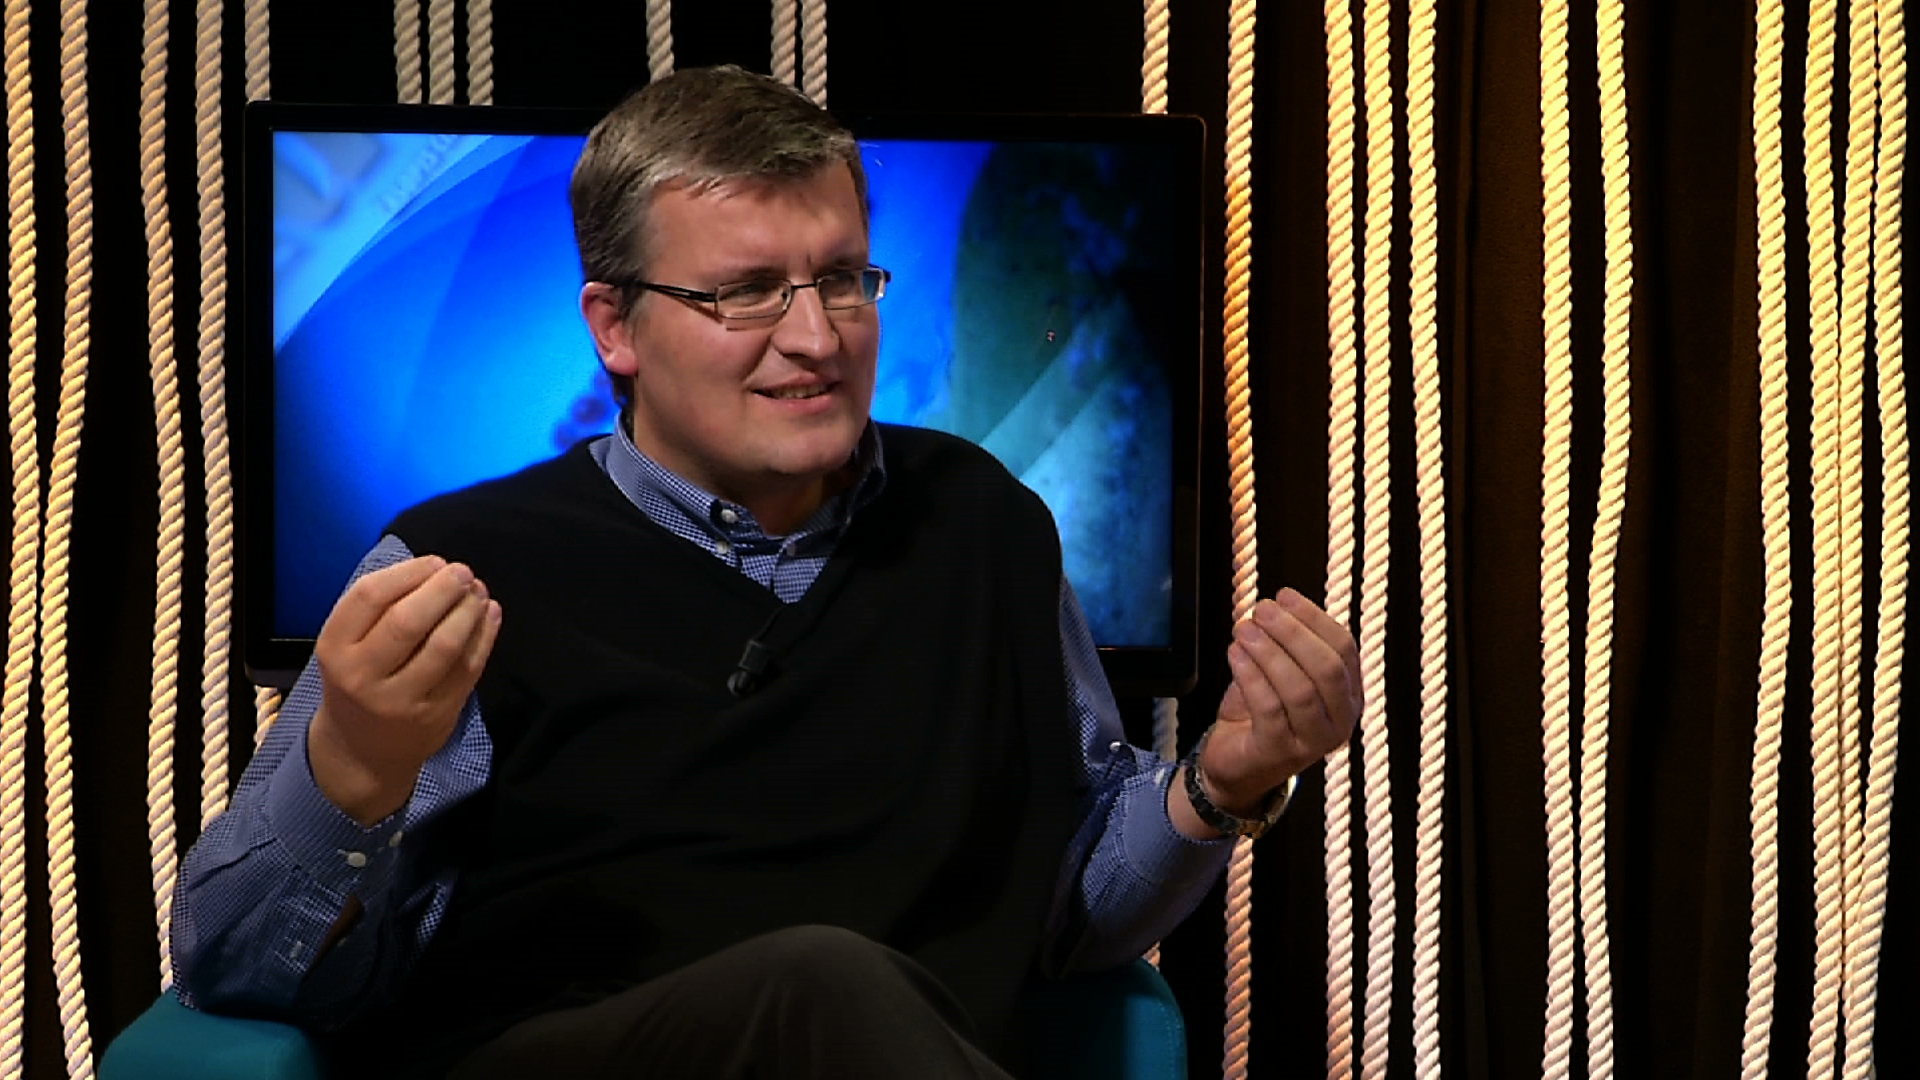 Modlitební týden 2013 na HopeTV s Václavem Vondráškem – "Mysl formovaná křížem"